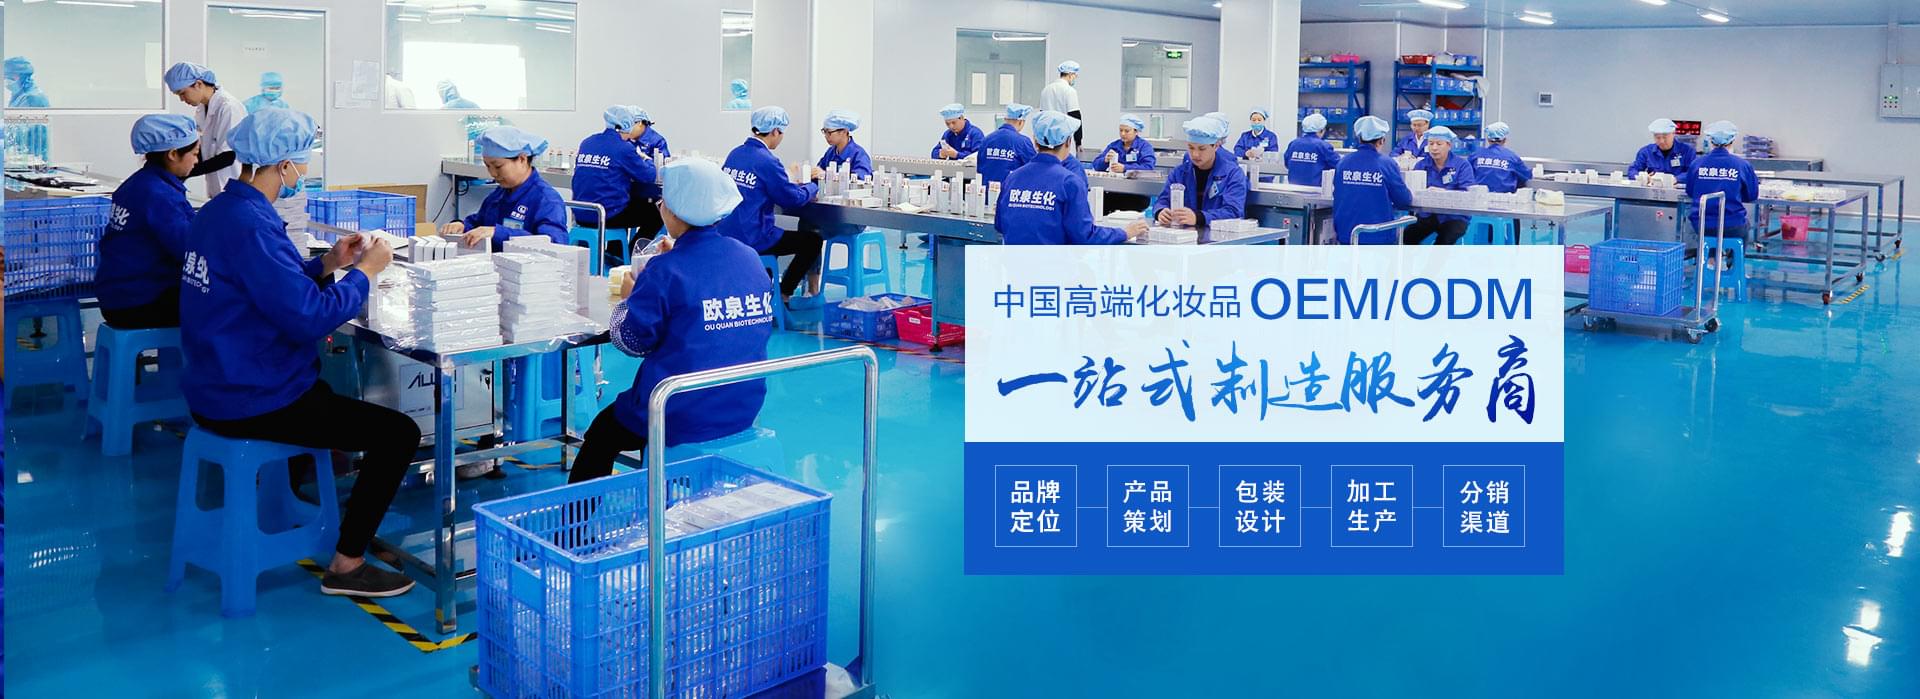 尊龙人生信誉生化-中国化妆品OEM/ODM一站式制造服务商